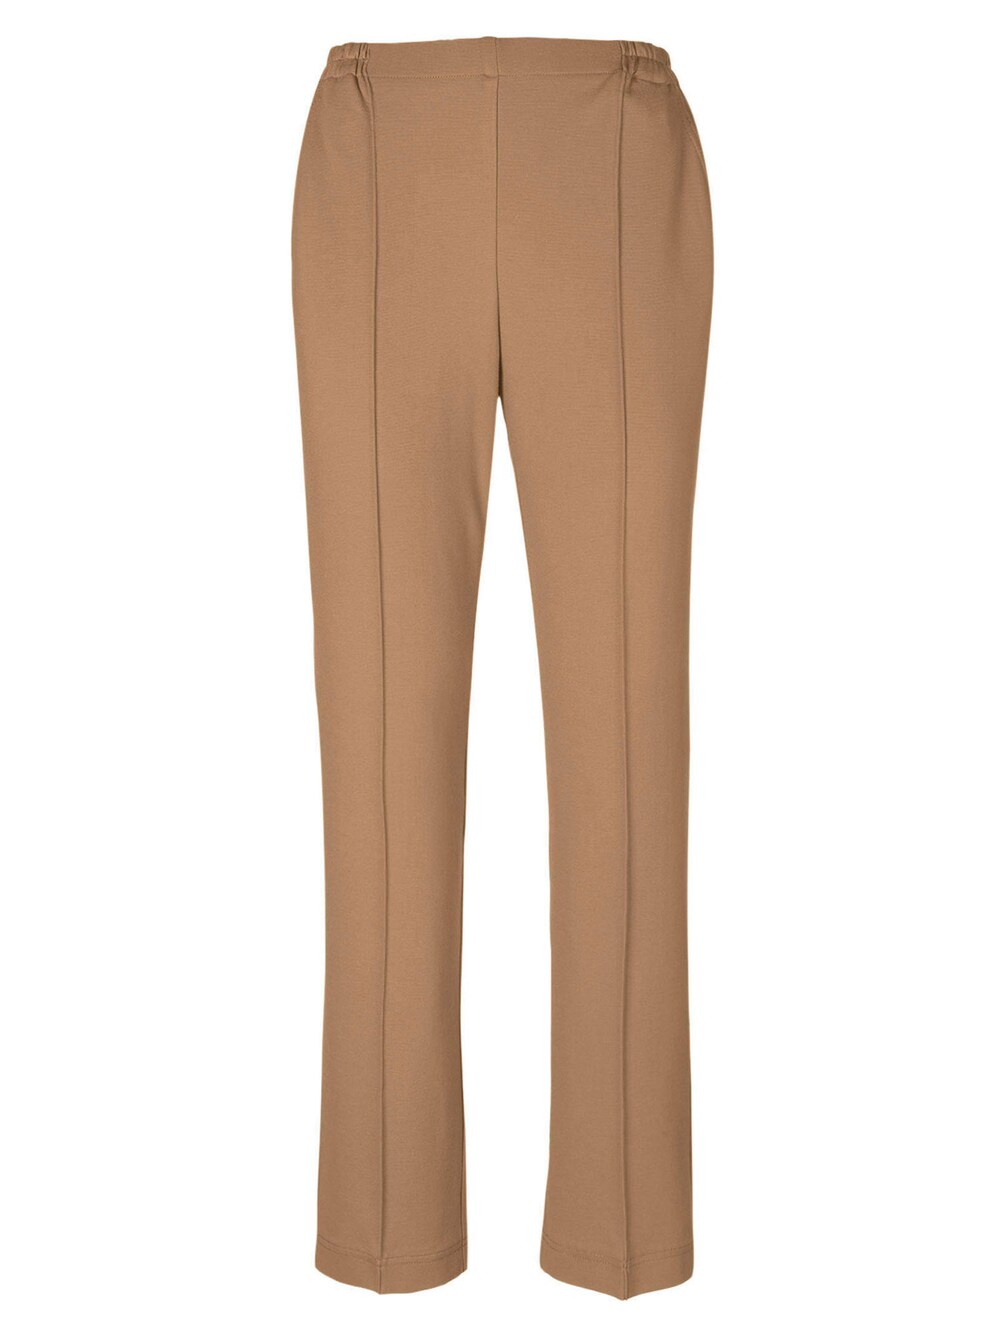 Узкие брюки Goldner Martha, светло-коричневый